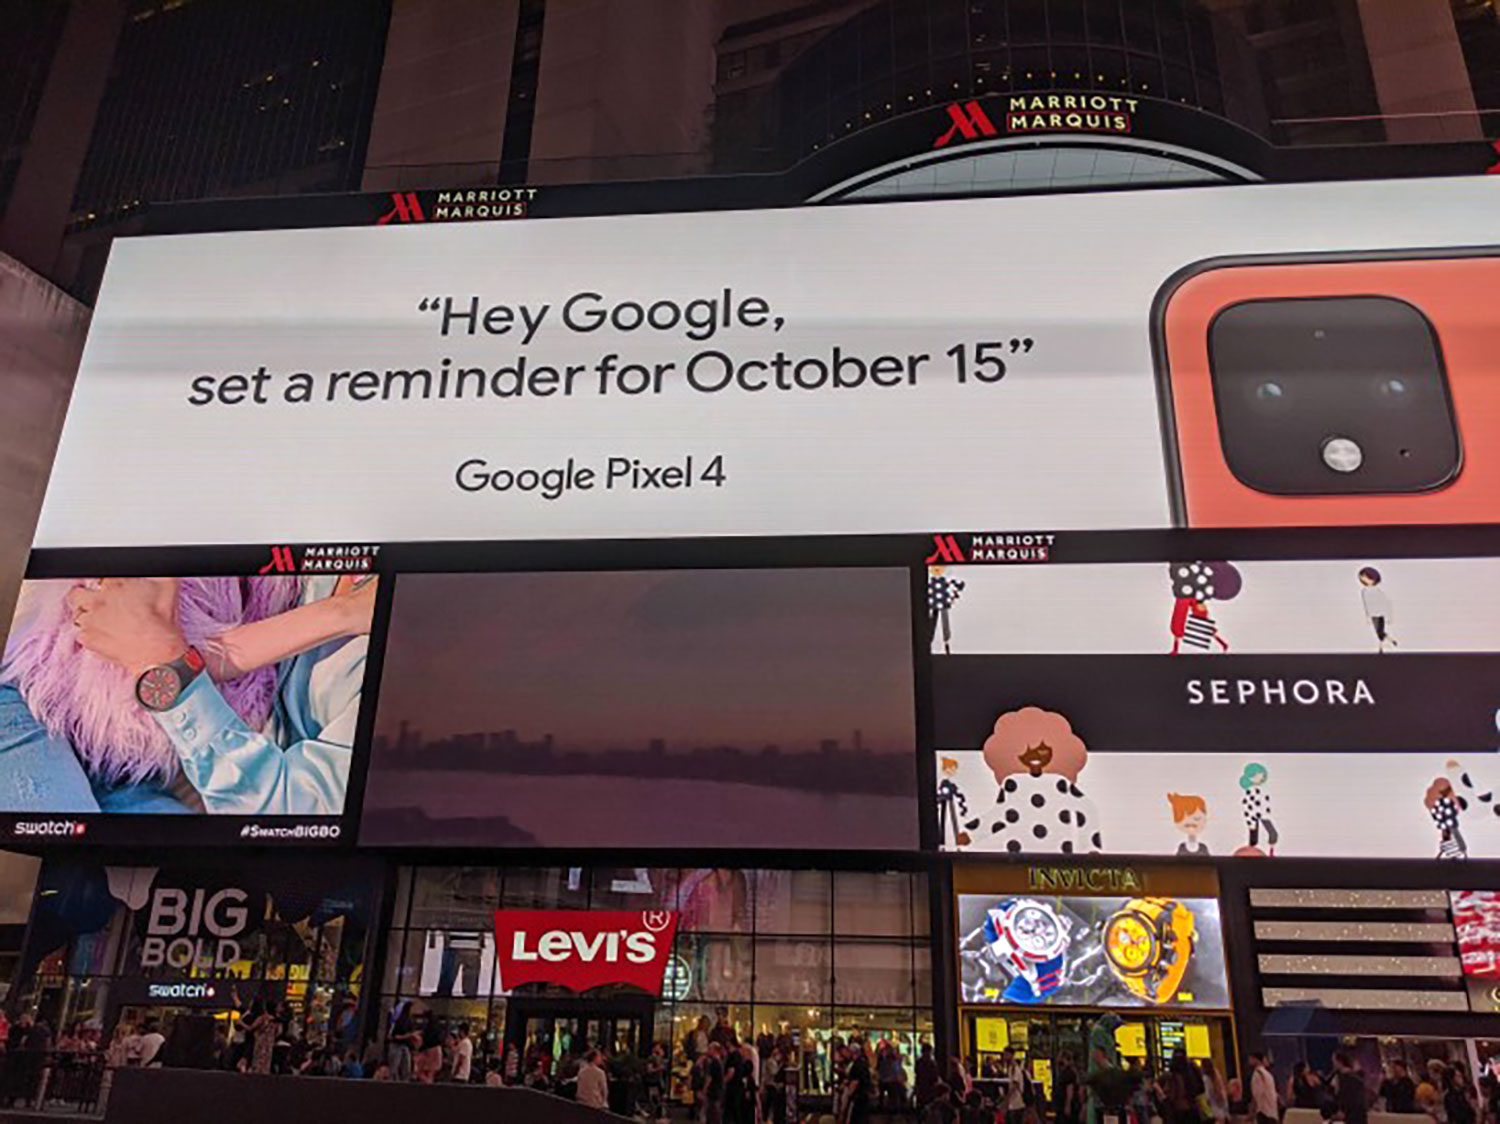 گوگل طراحی دوربین پیکسل ۴ و رنگ نارنجی آن را در میدان تایمز نیویورک رسما تبلیغ می کند